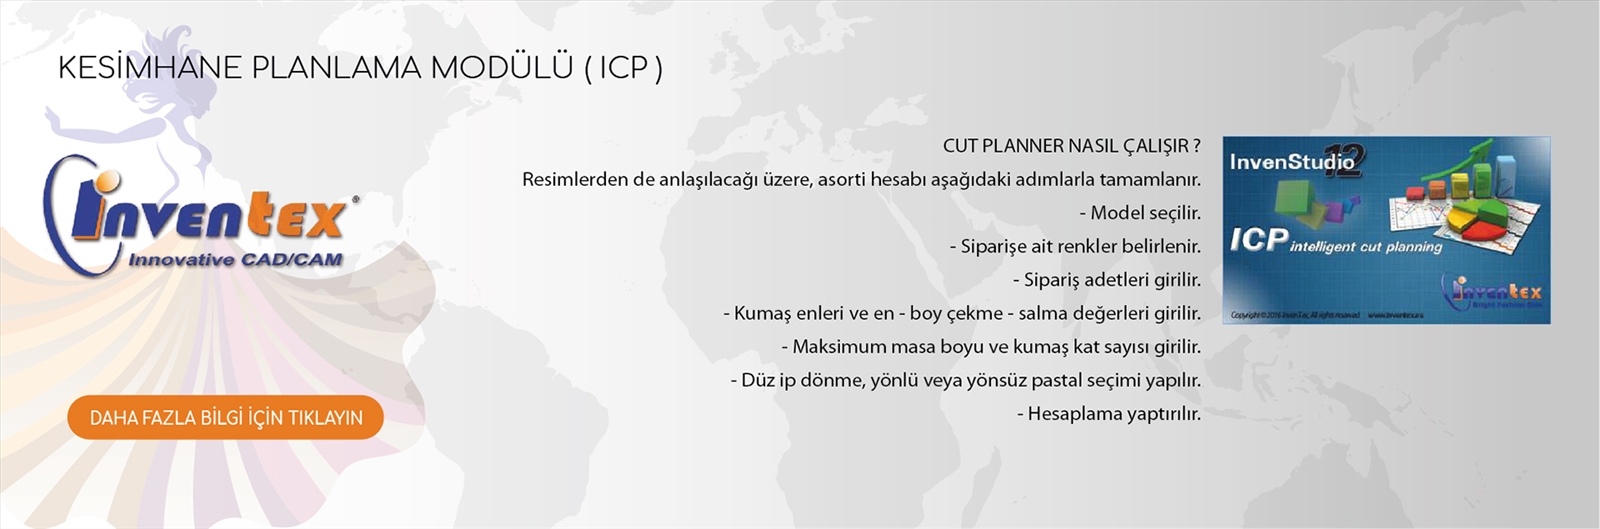 12-ICP